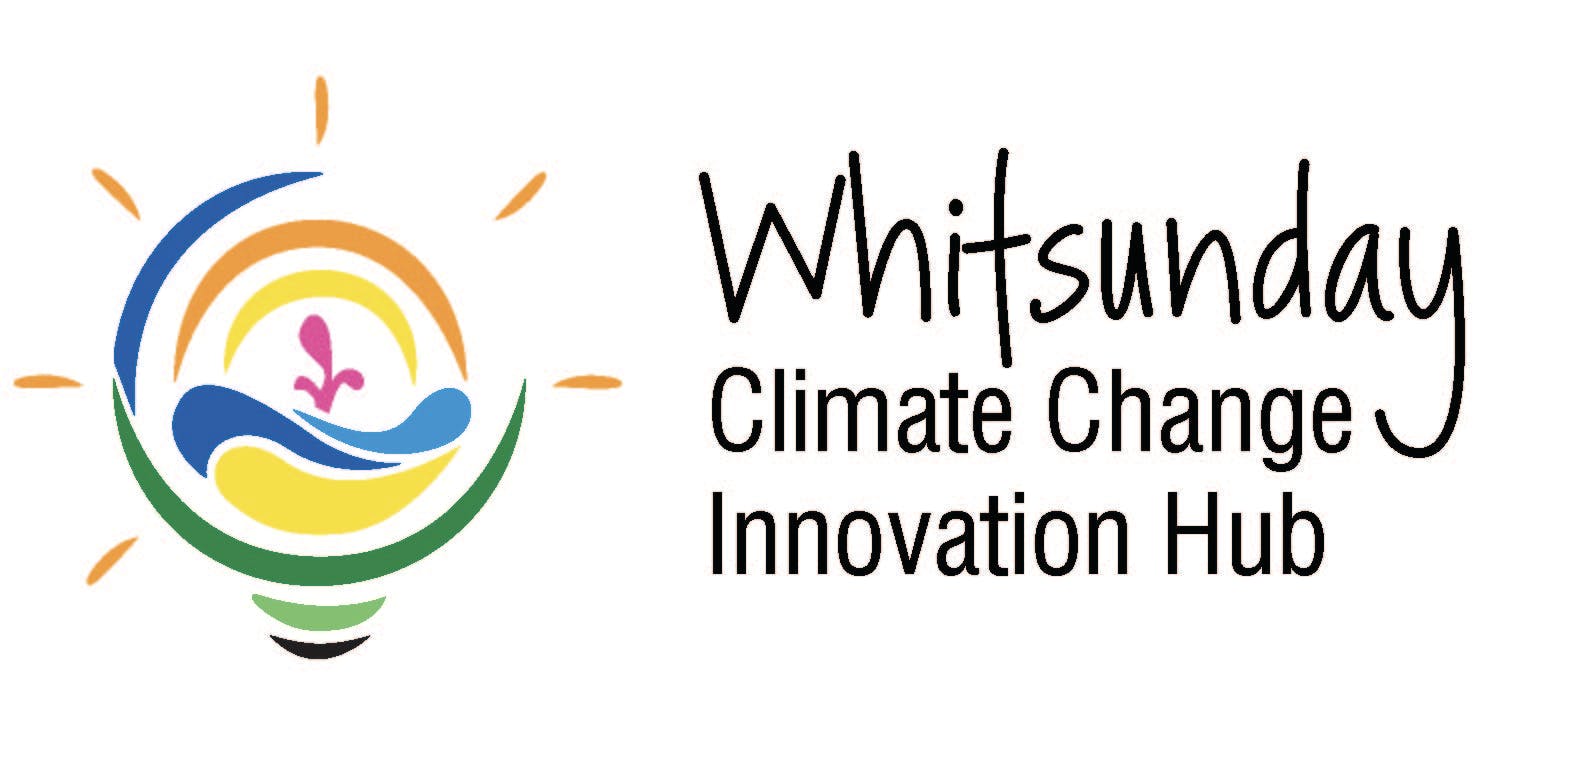 Whitsunday Climate Change Innovation Hub